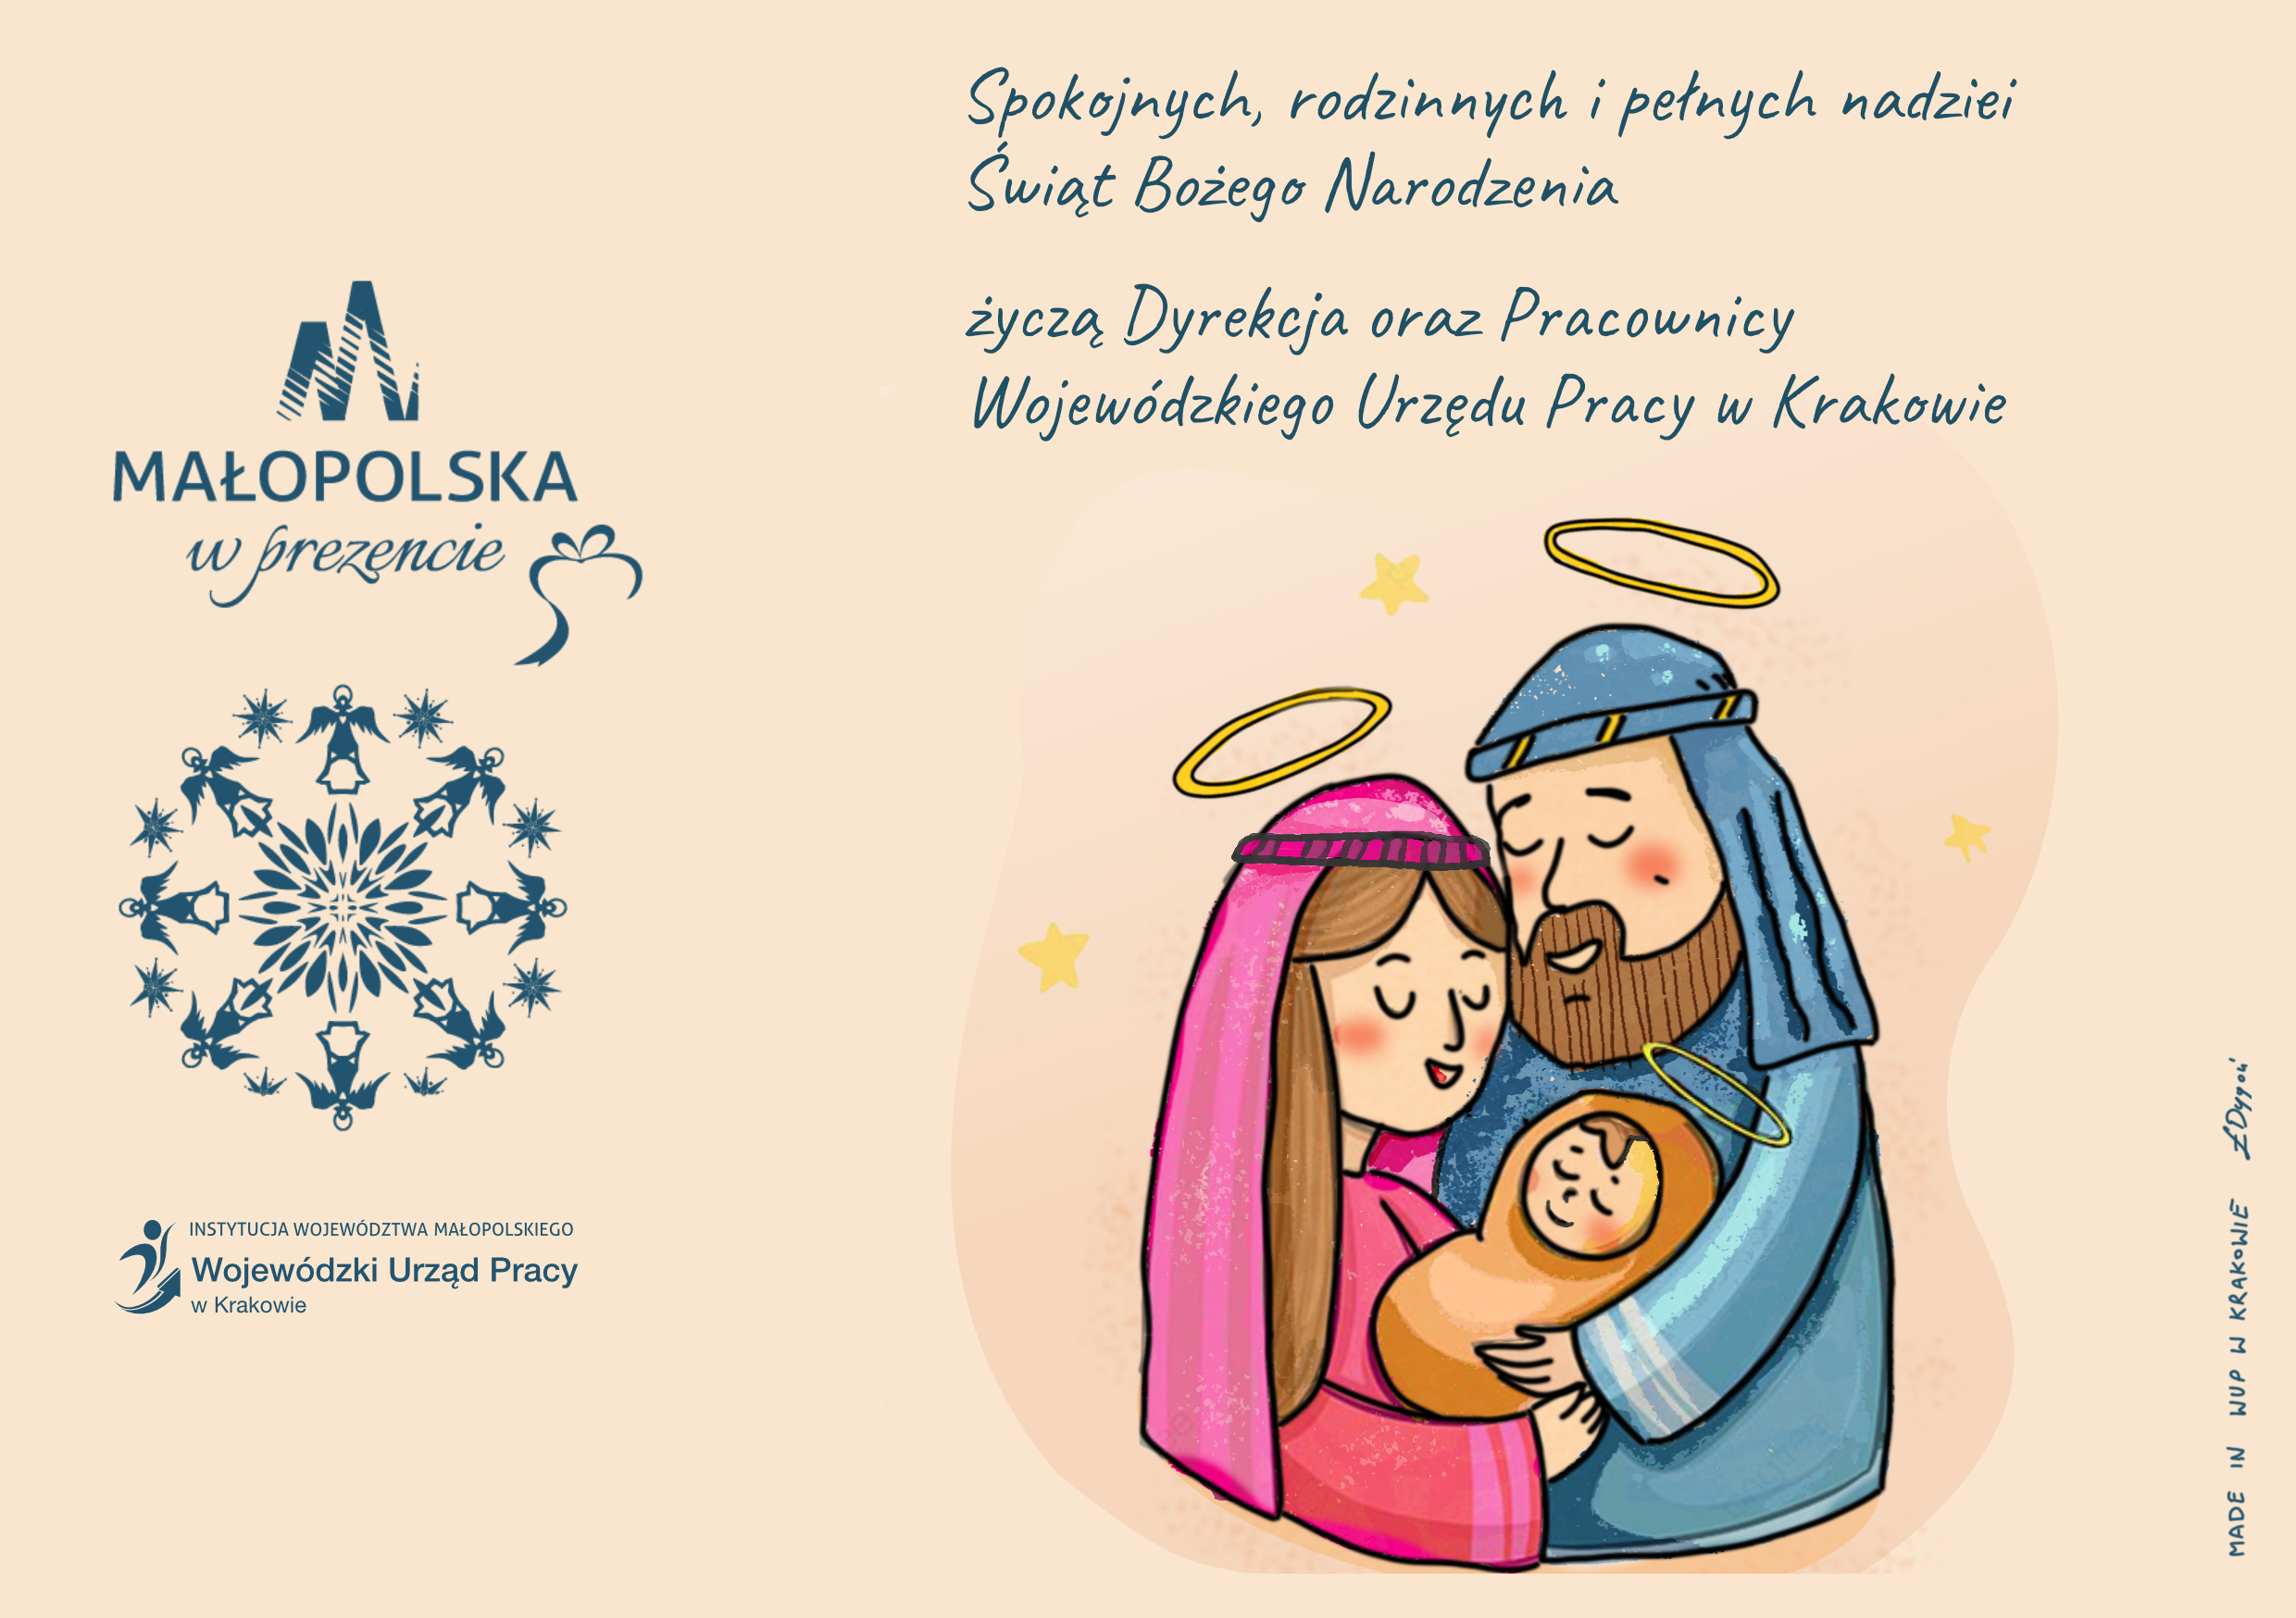 Spokojnych, rodzinnych i pełnych nadziei Świąt Bożego Narodzenia życzą Dyrekcja oraz Pracownicy Wojewódzkiego Urzędu Pracy w Krakowie